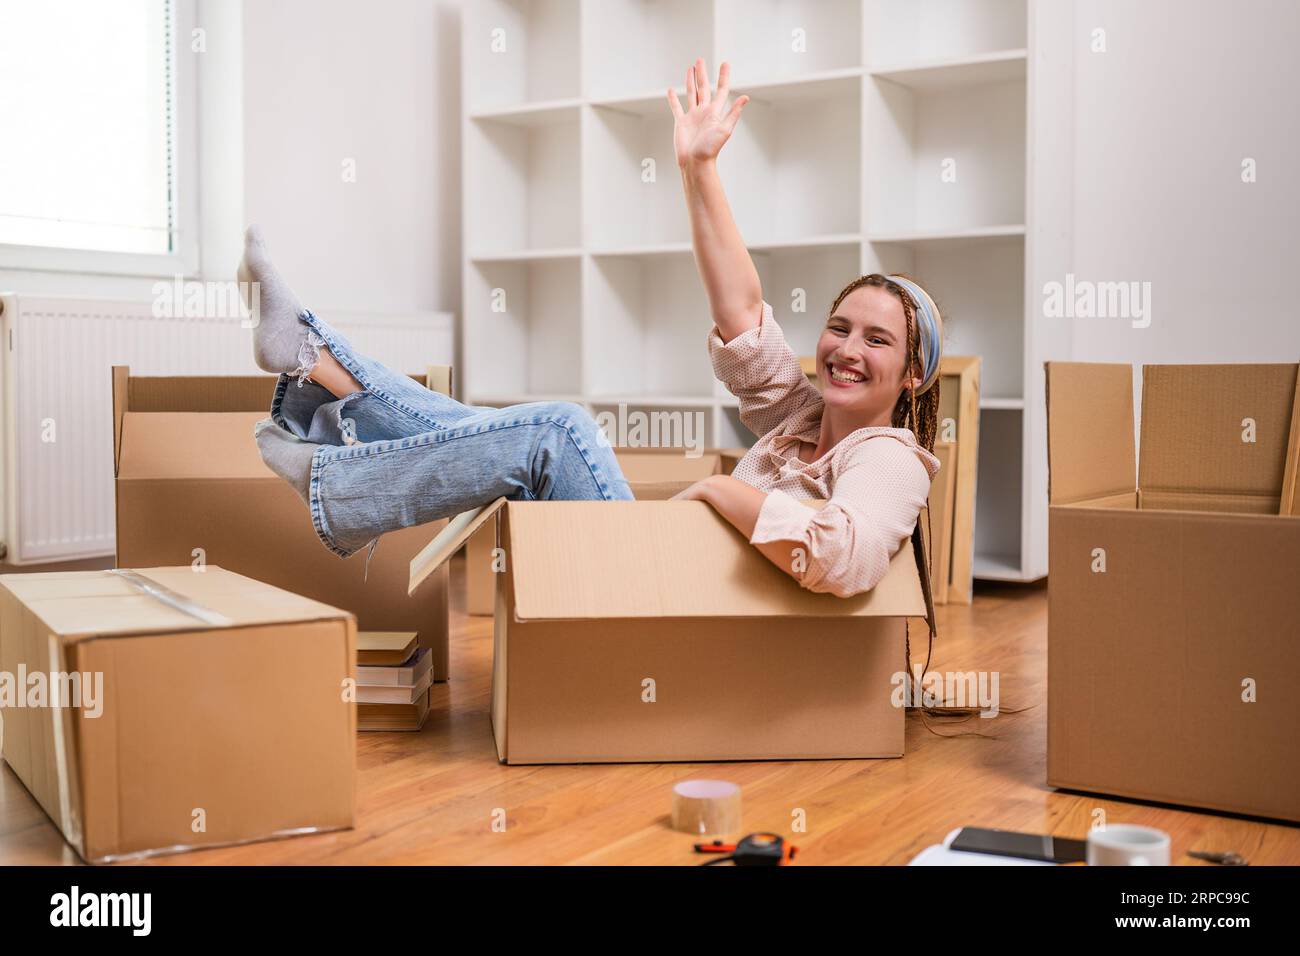 Glückliche Frau winkt, während sie in der Box sitzt und Spaß in ihrem neuen Zuhause hat. Stockfoto